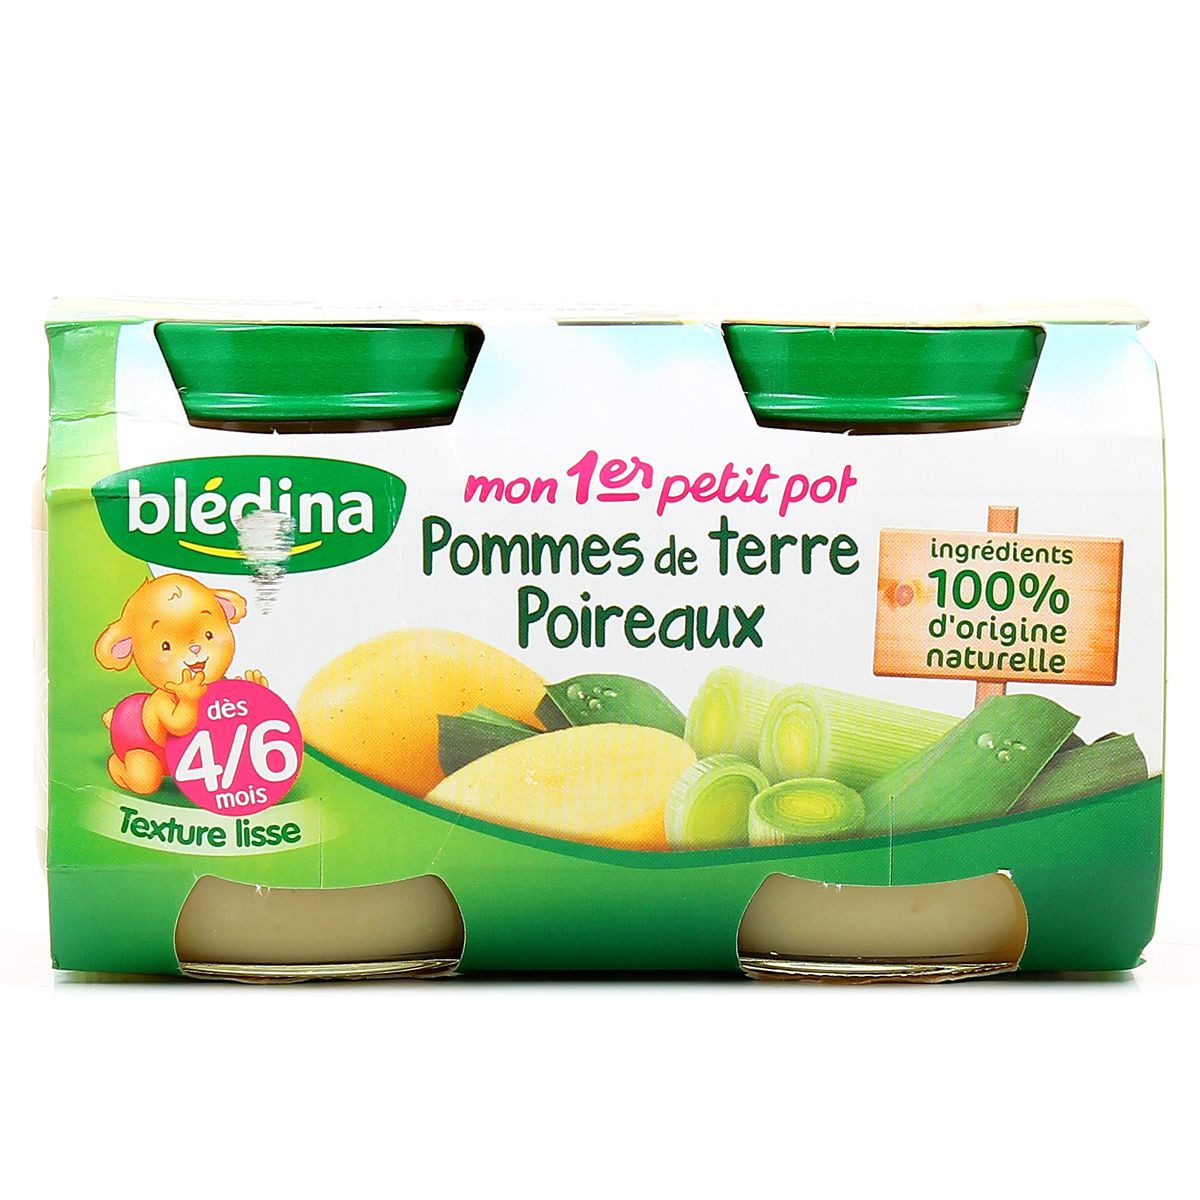 Blédina Blédîner Soupe du Soir Délice de Poireaux/Pommes de Terre